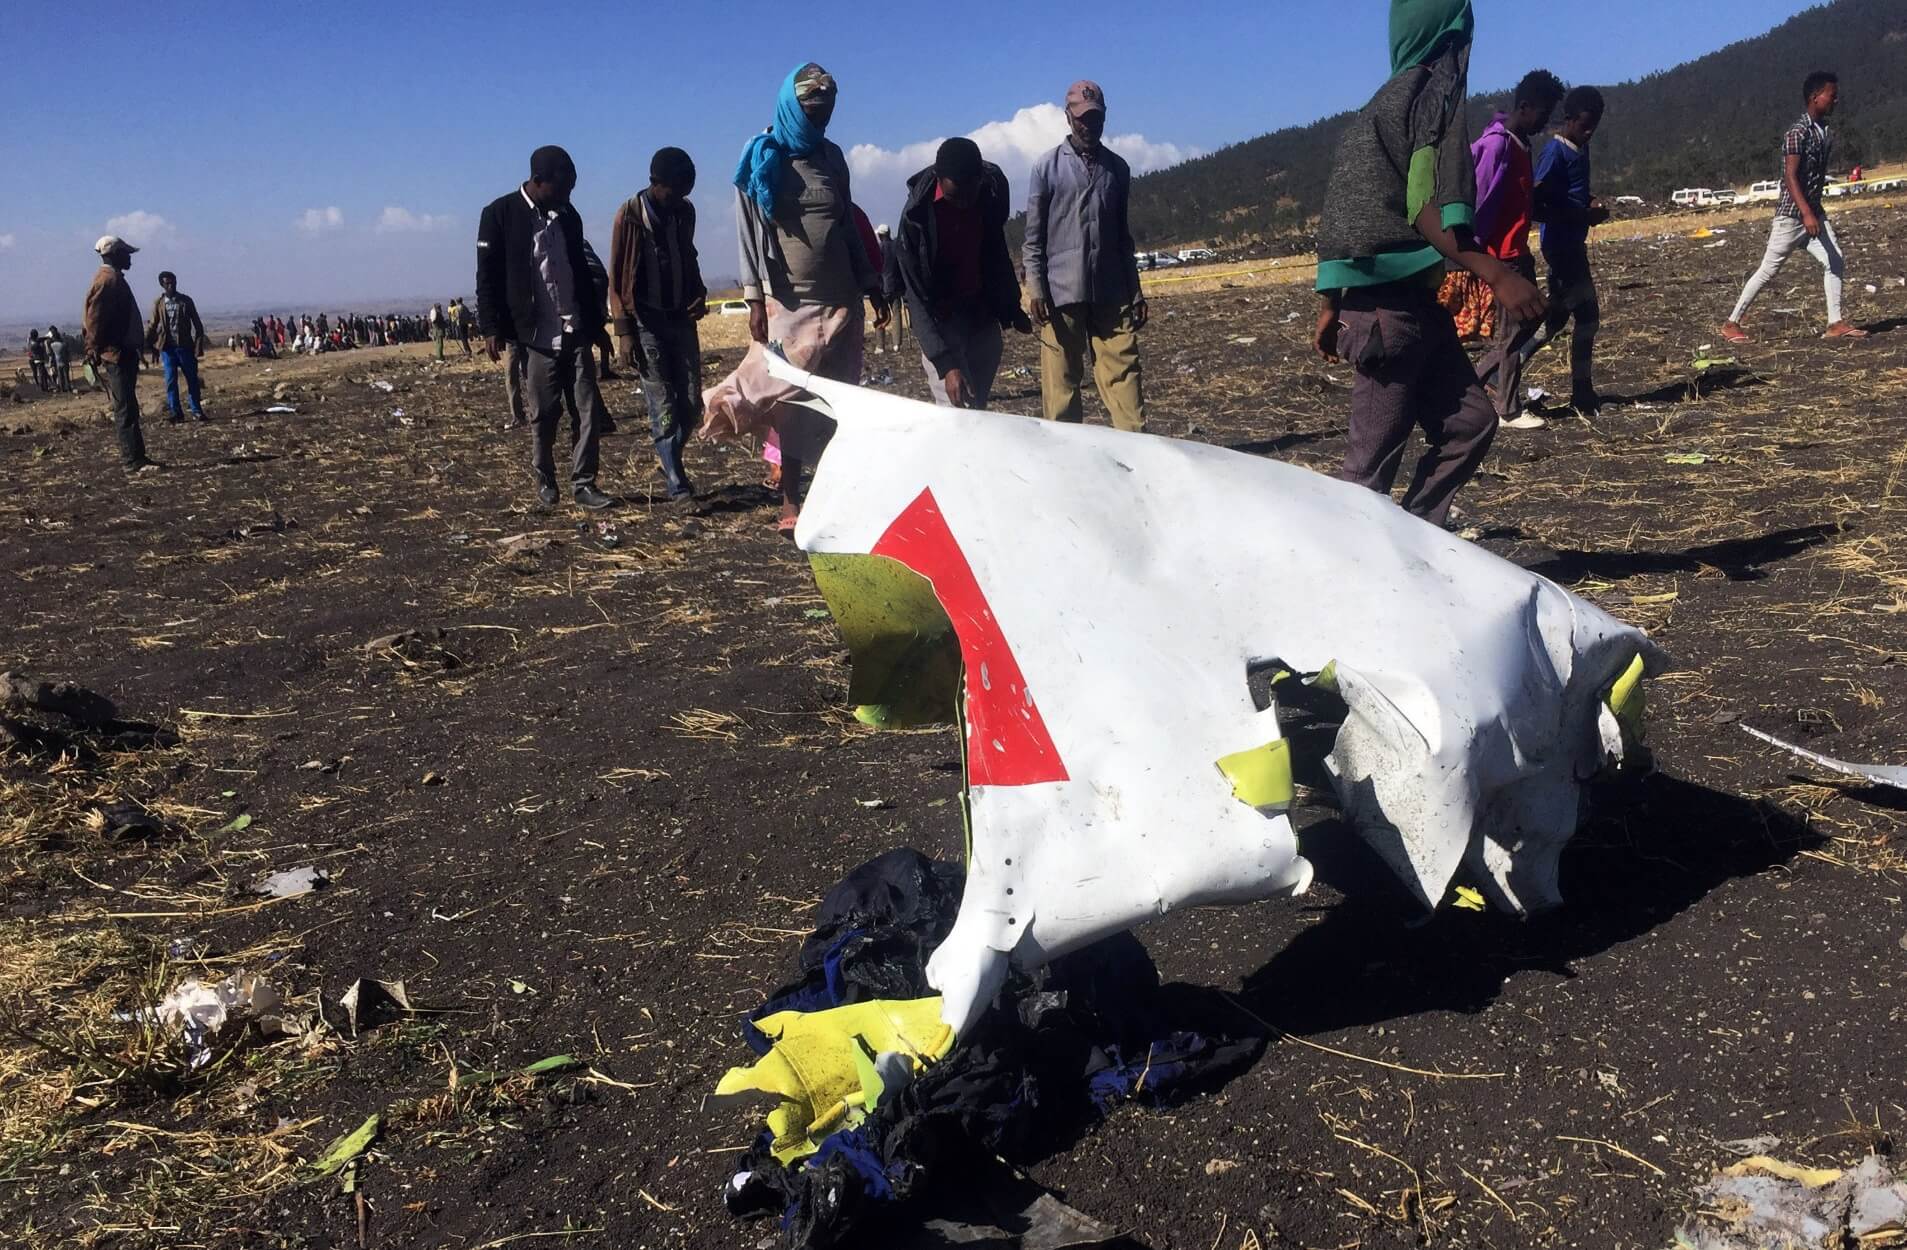 Αιθιοπία: Περισσότεροι από 10 υπάλληλοι του ΟΗΕ επέβαιναν στο μοιραίο αεροσκάφος! – Video